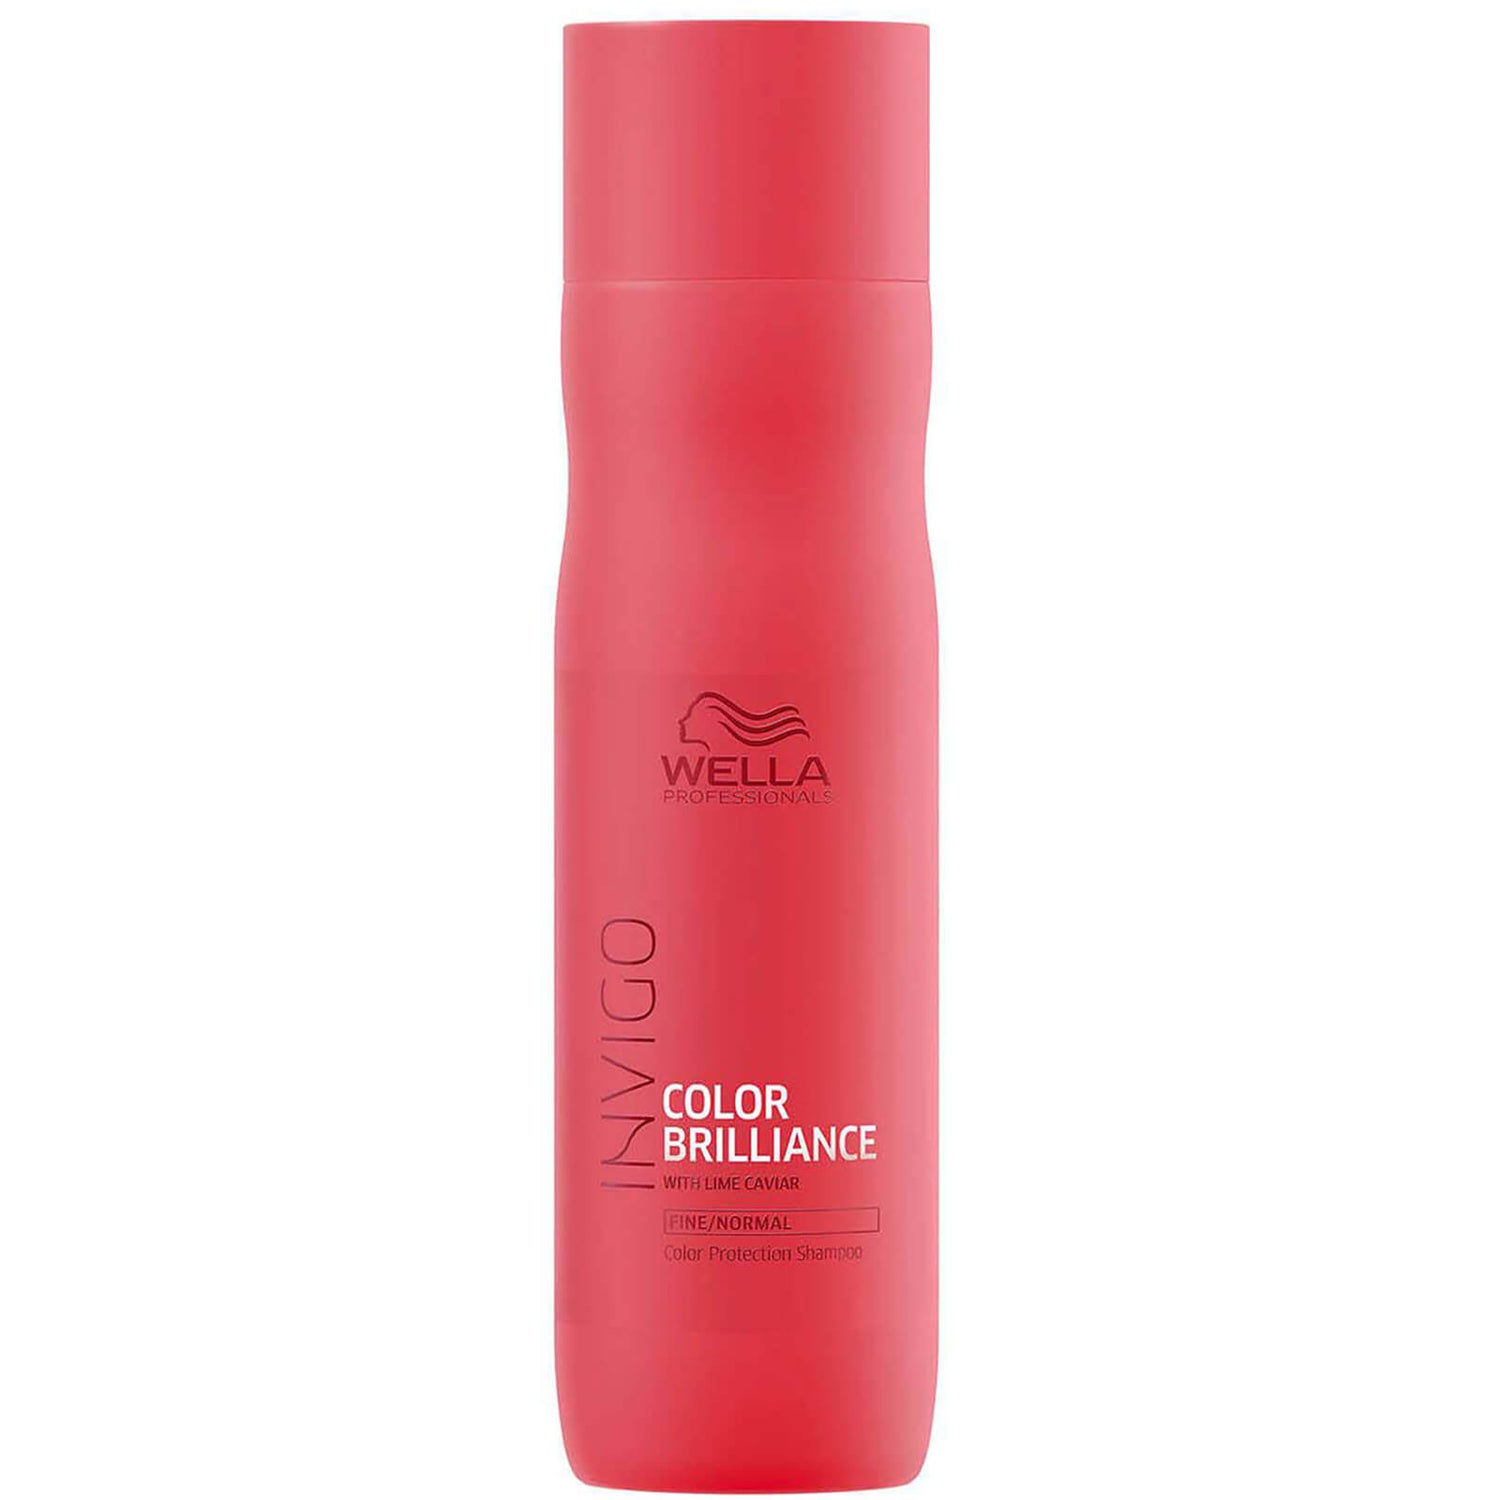 Shampoing brillance pour cheveux fins/normaux colorés Wella Professionals Brilliance (250ml)